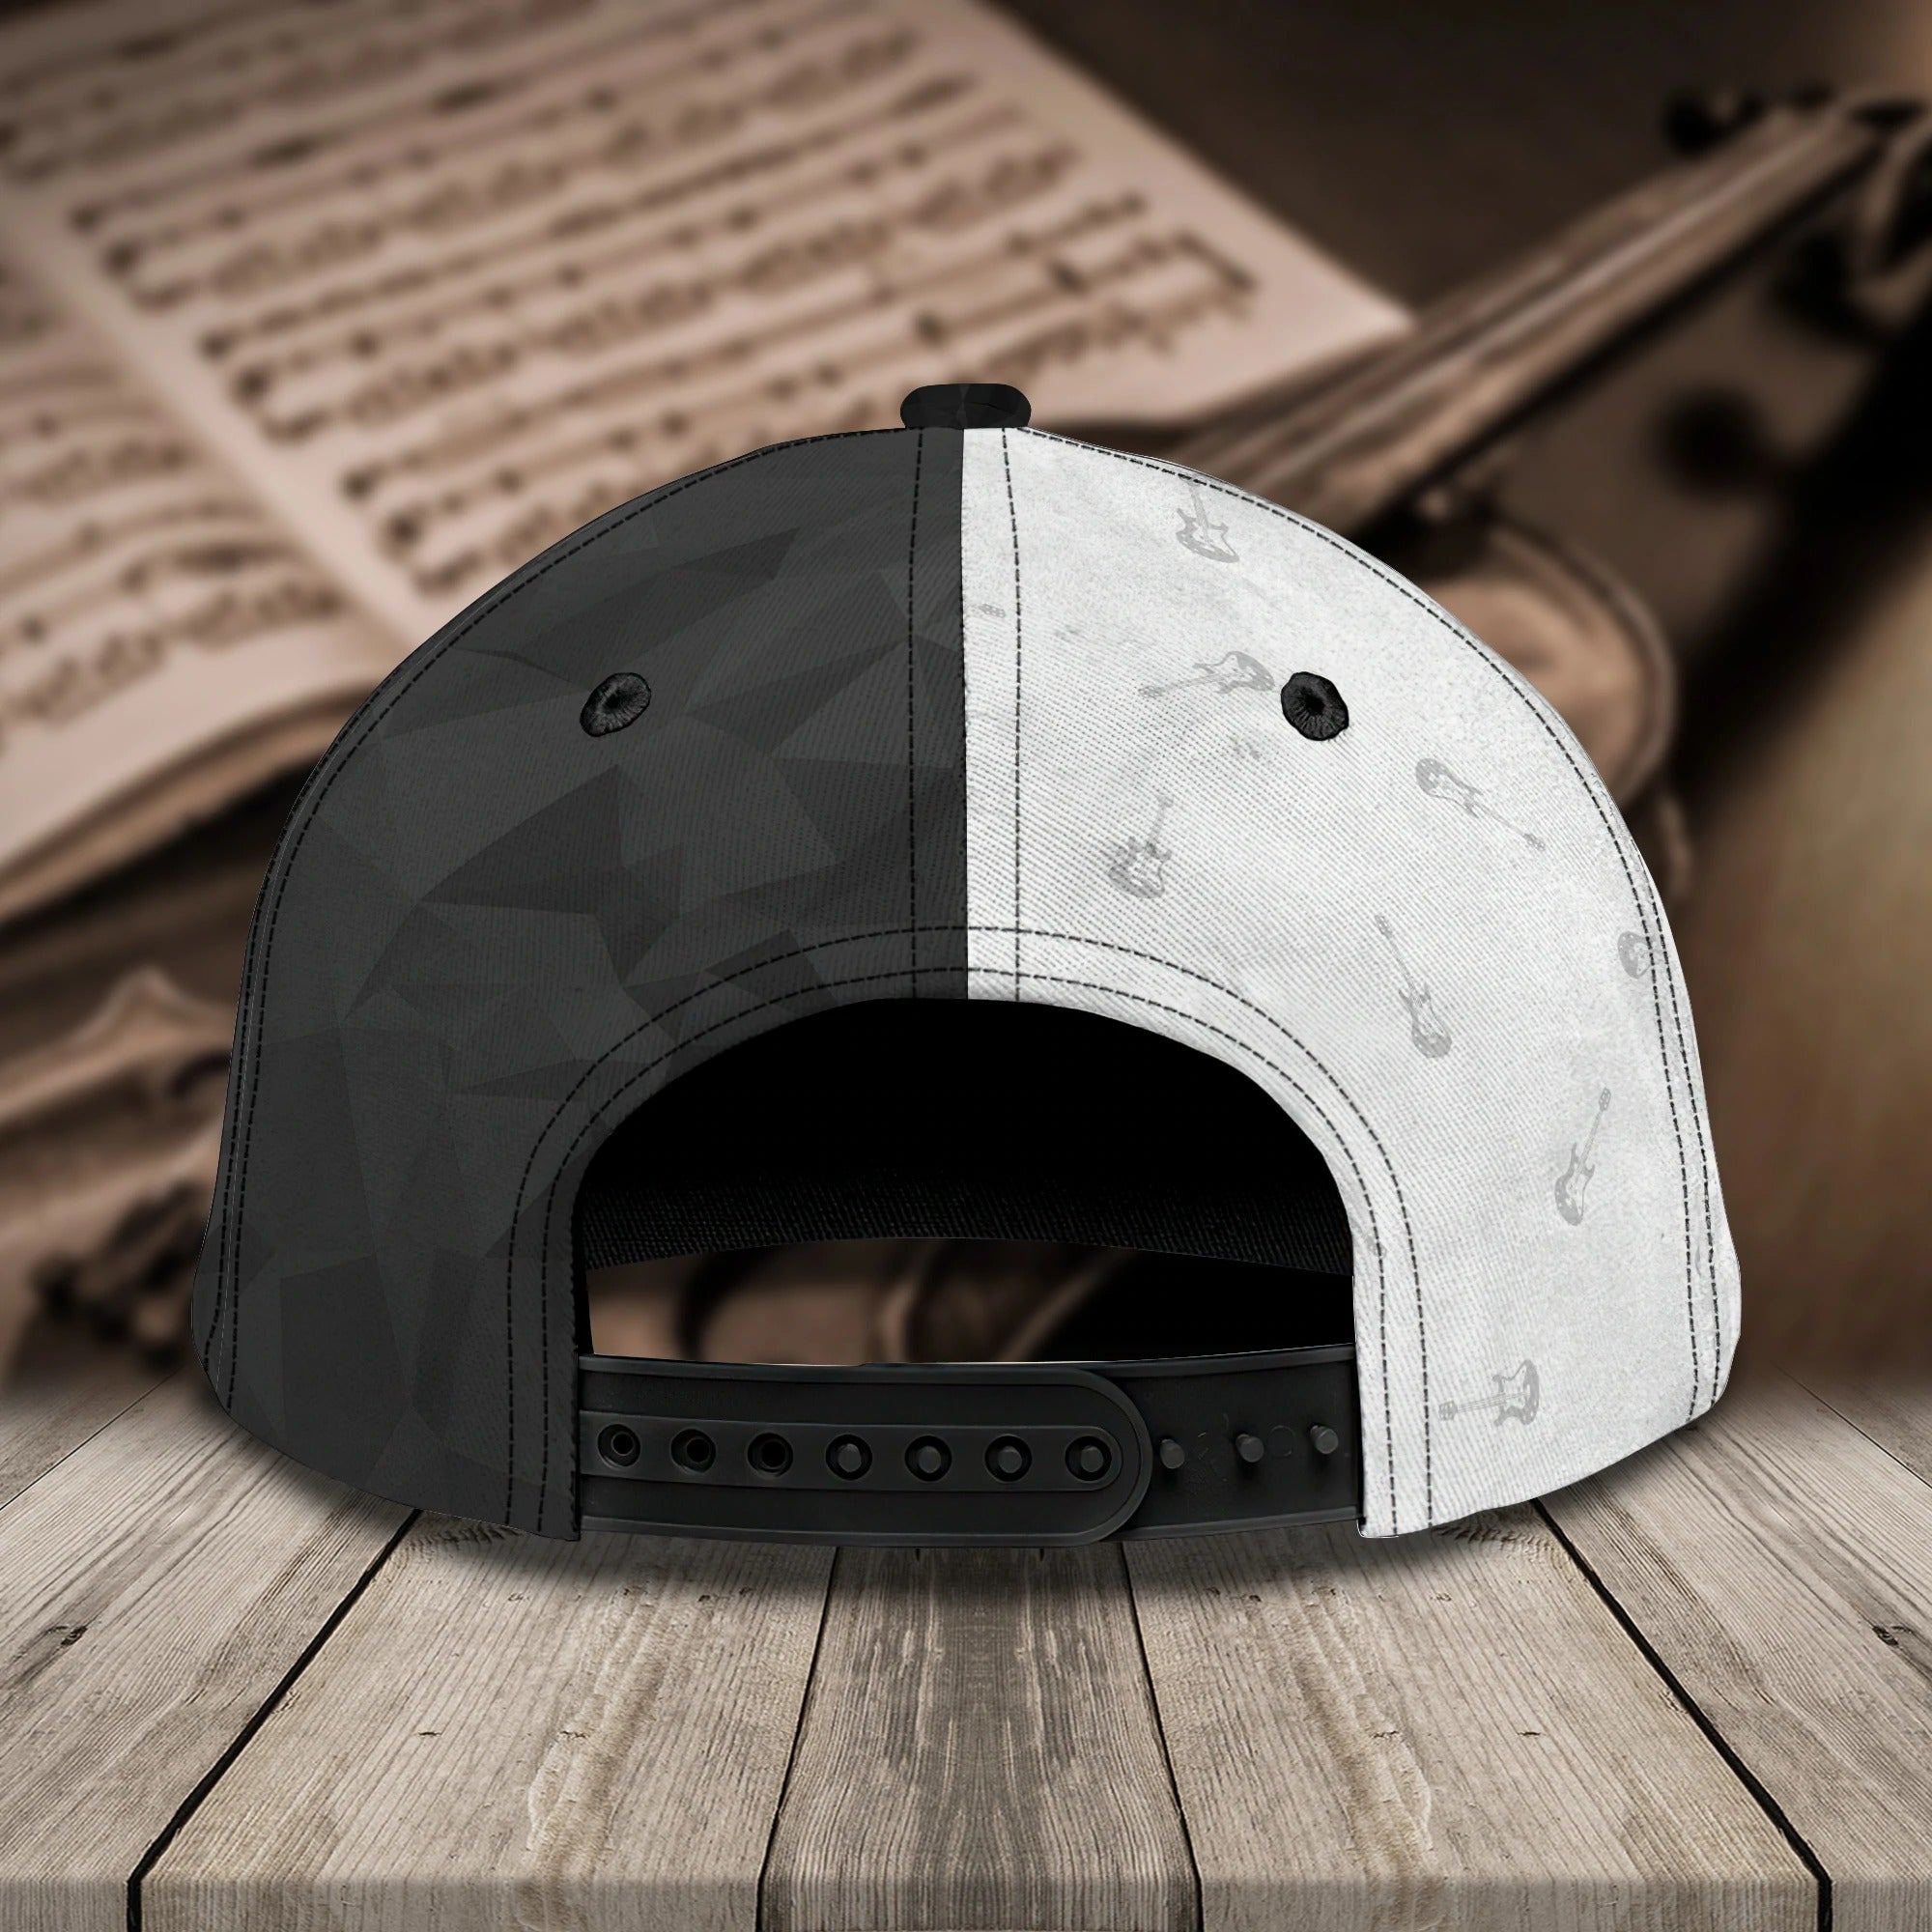 Personalized Baseball Wood Guitar Cap For Musican/ Guitarist Cap Hat/ Summer Travel Guitar Full Print Cap